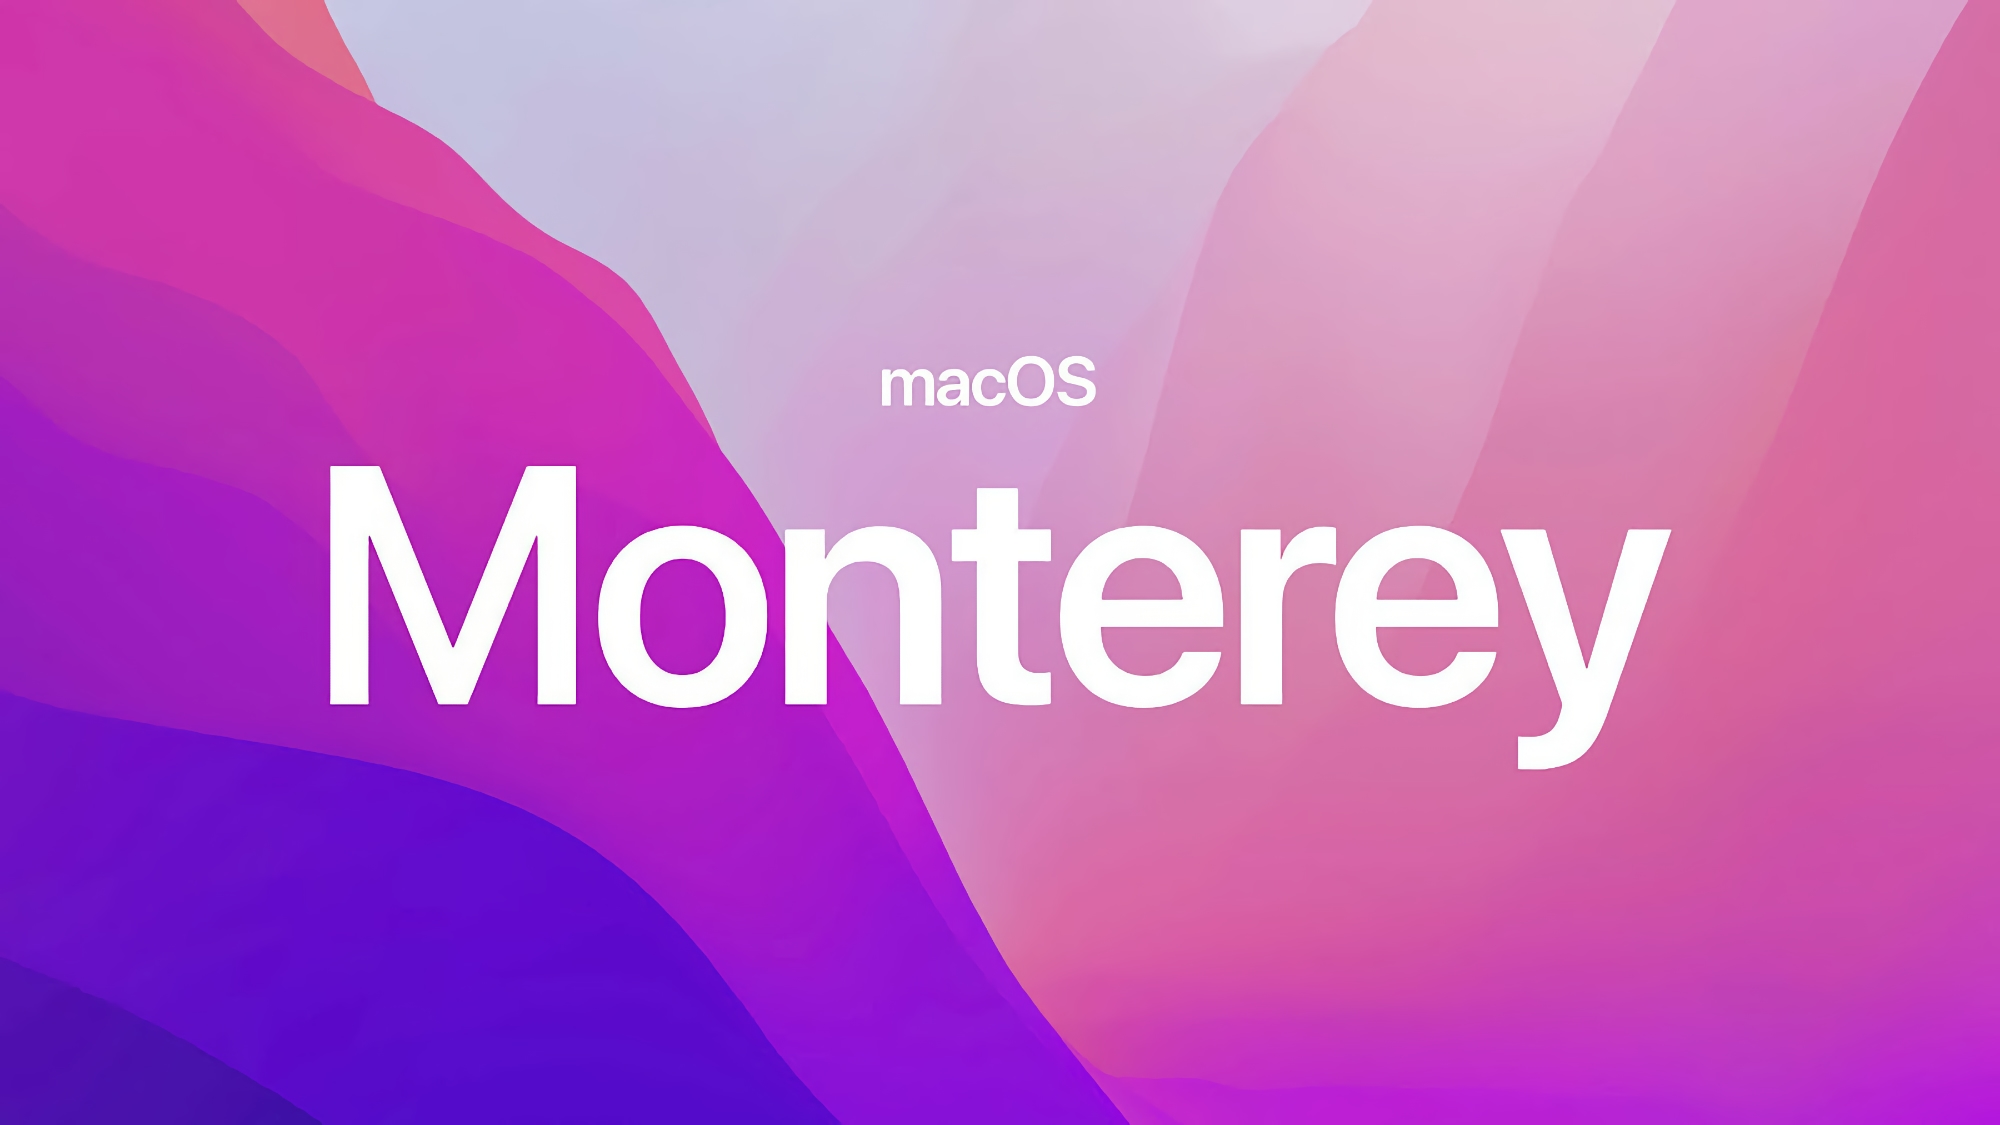 Після iOS 15.6.1: Apple анонсувала macOS Monterey 12.5.1 з покращеною безпекою